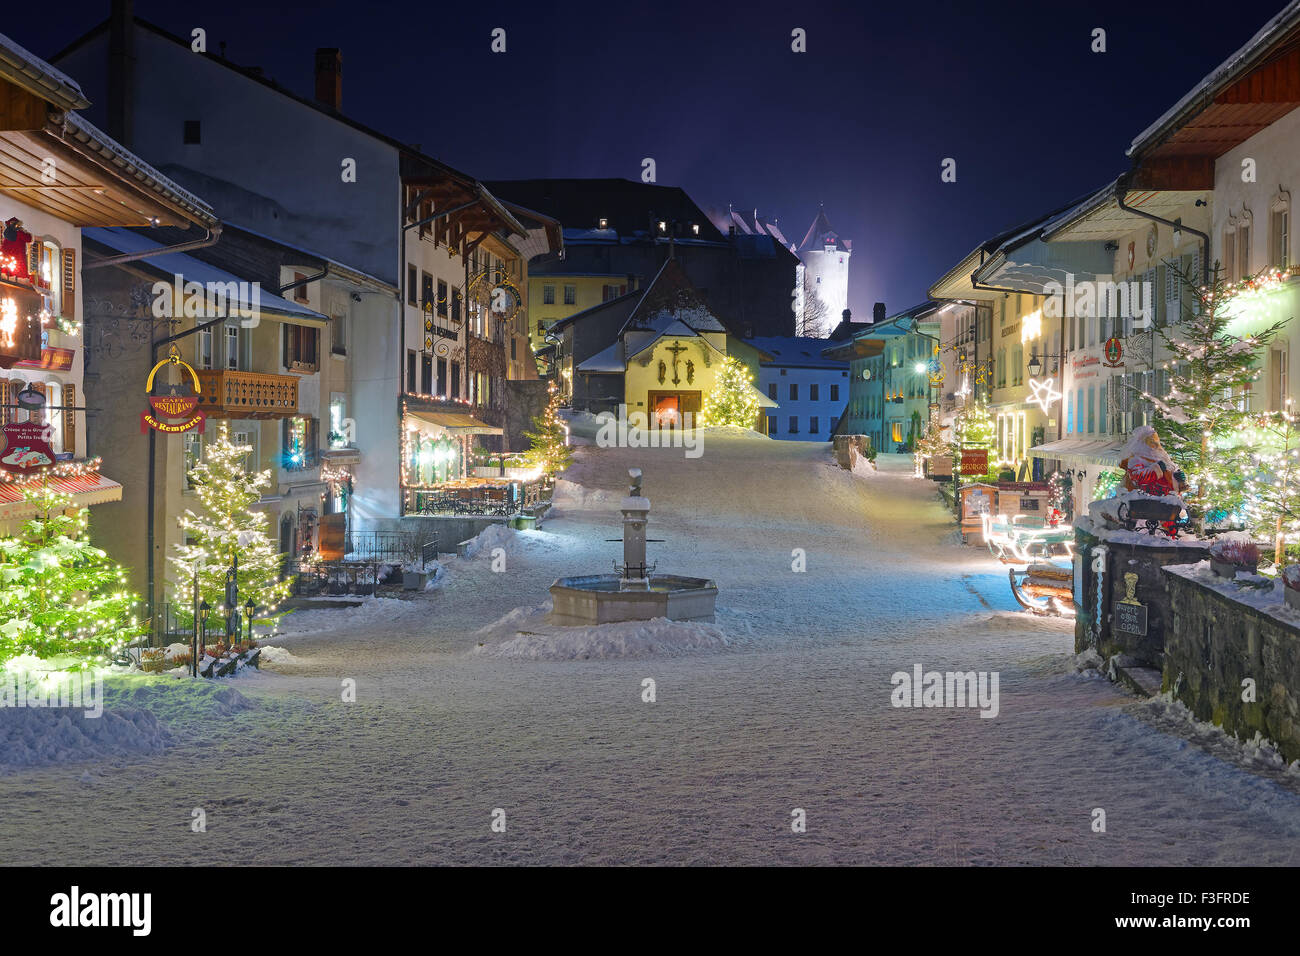 Vista notturna della città medievale di Gruyeres, distretto di Gruyere, cantone di Friburgo, Svizzera Foto Stock